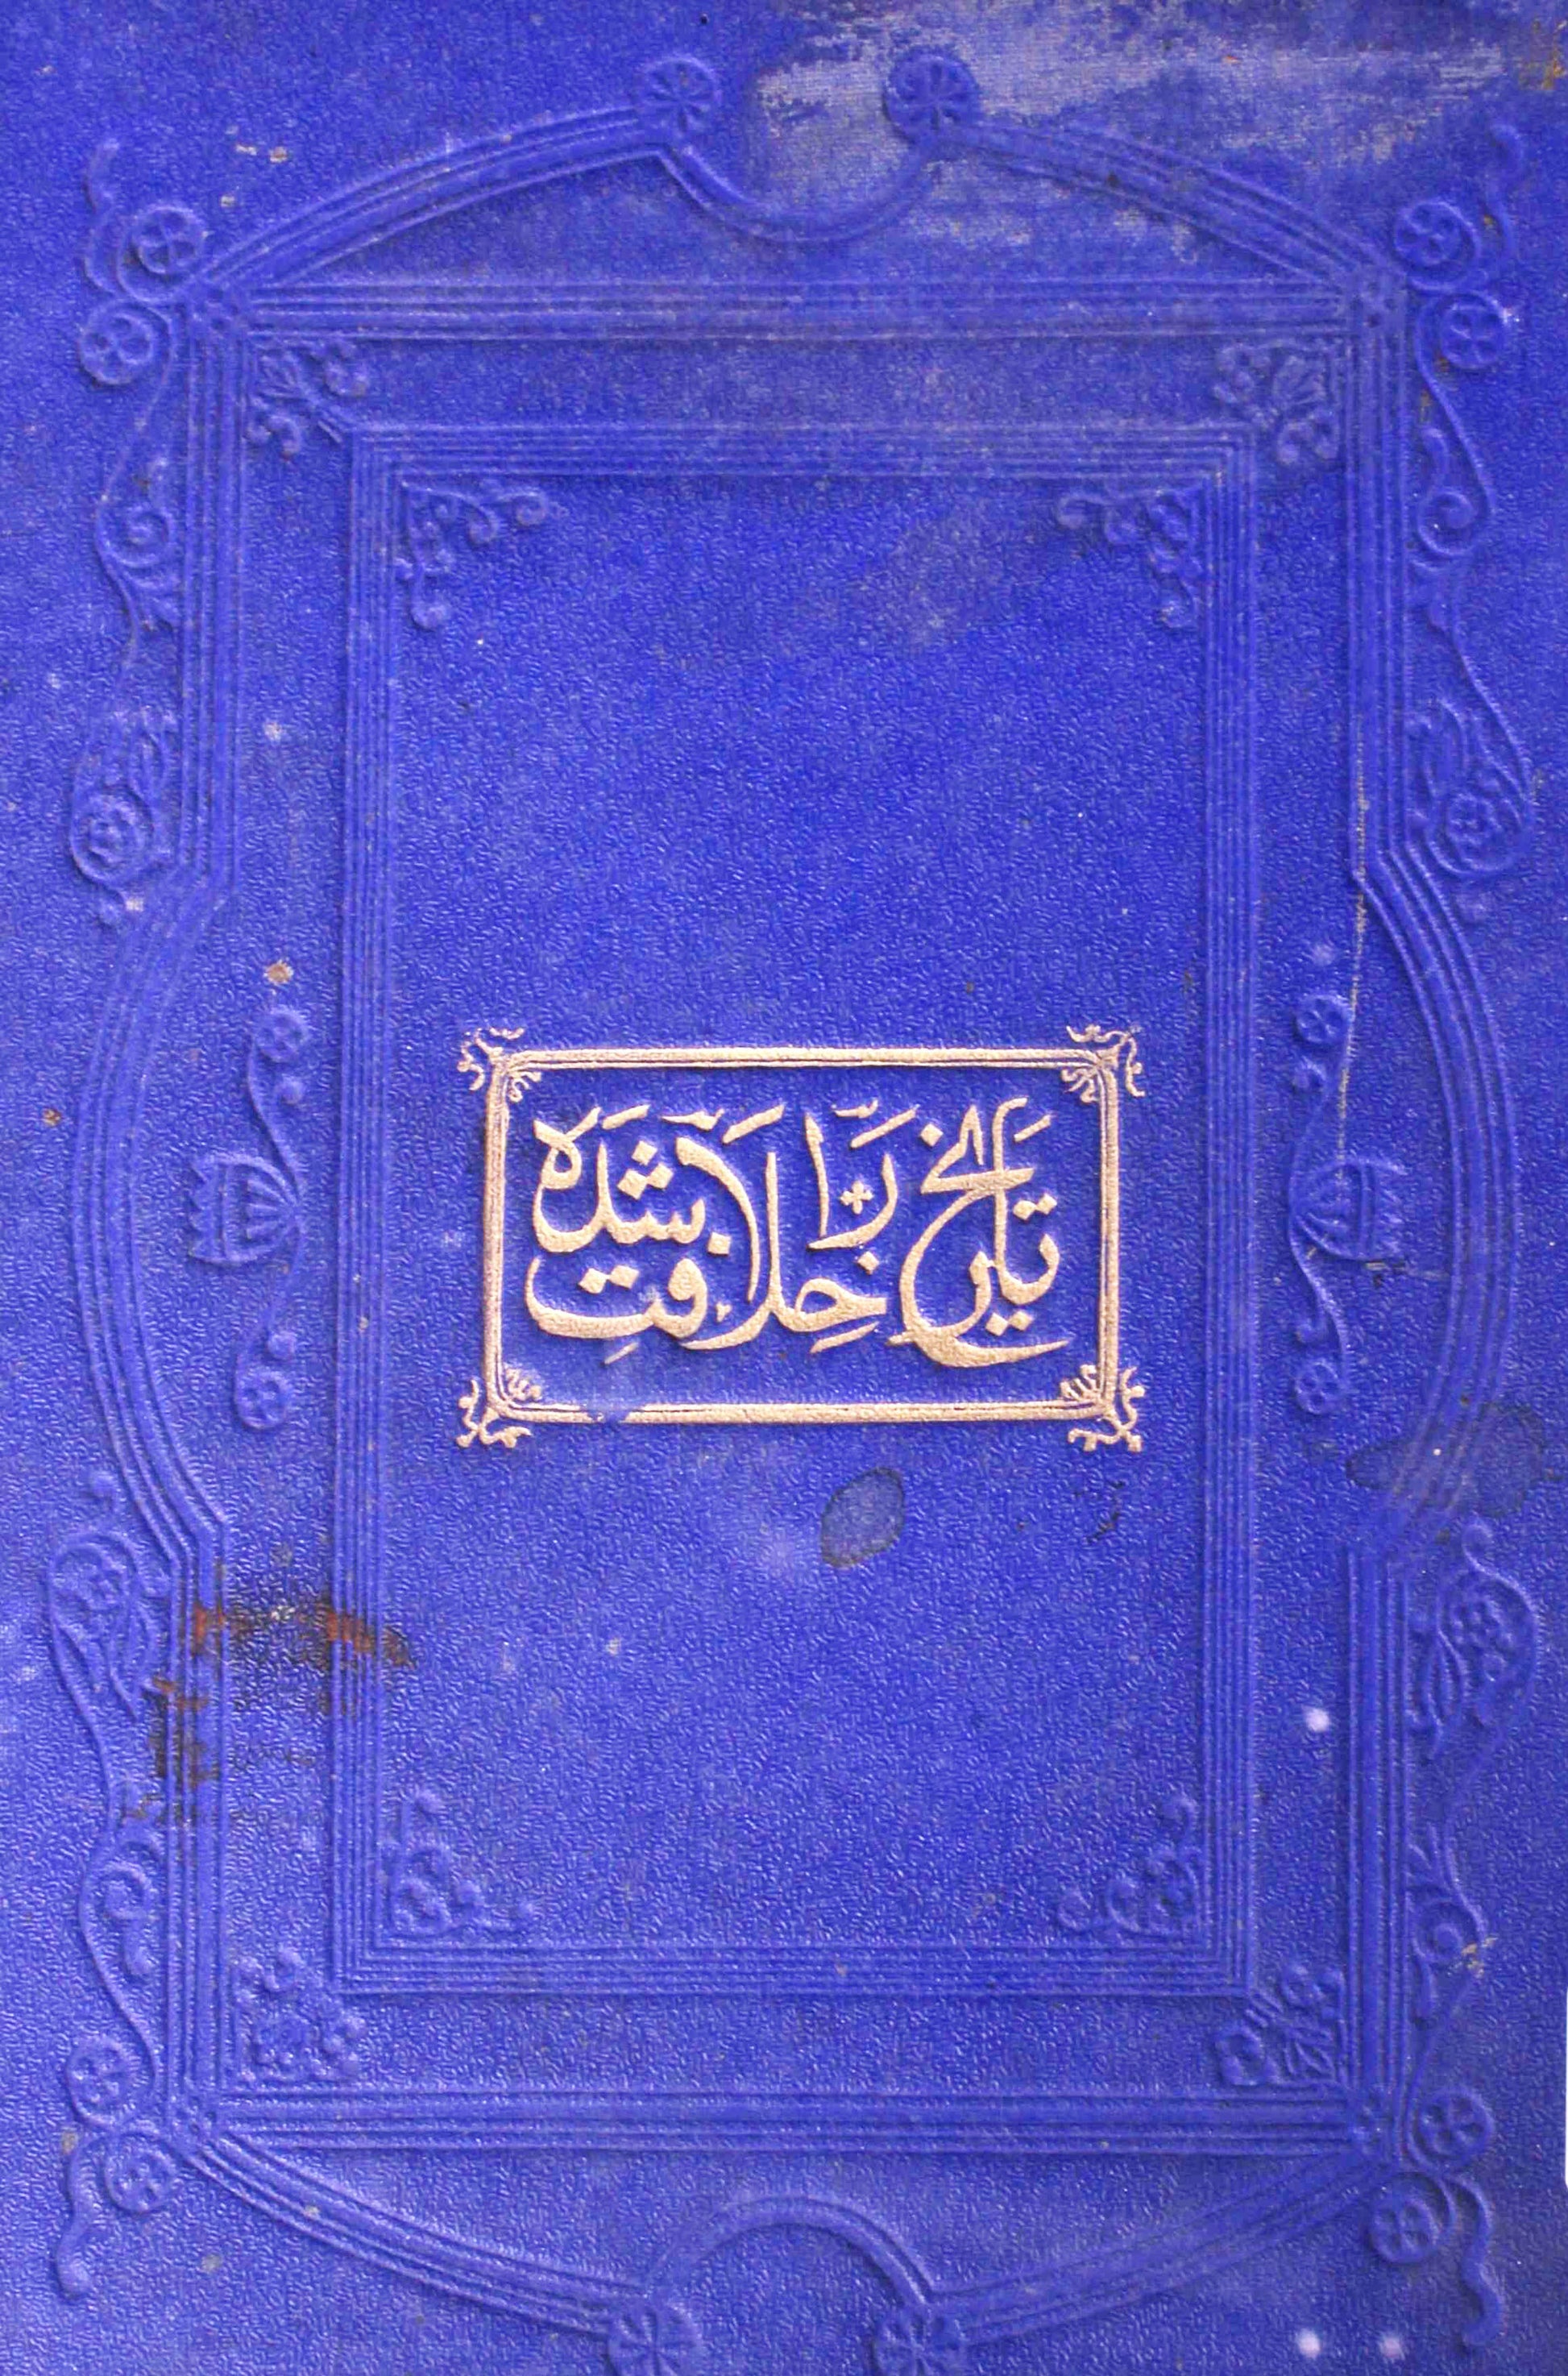 Tareekh-e-Khilafat-e-Rashida